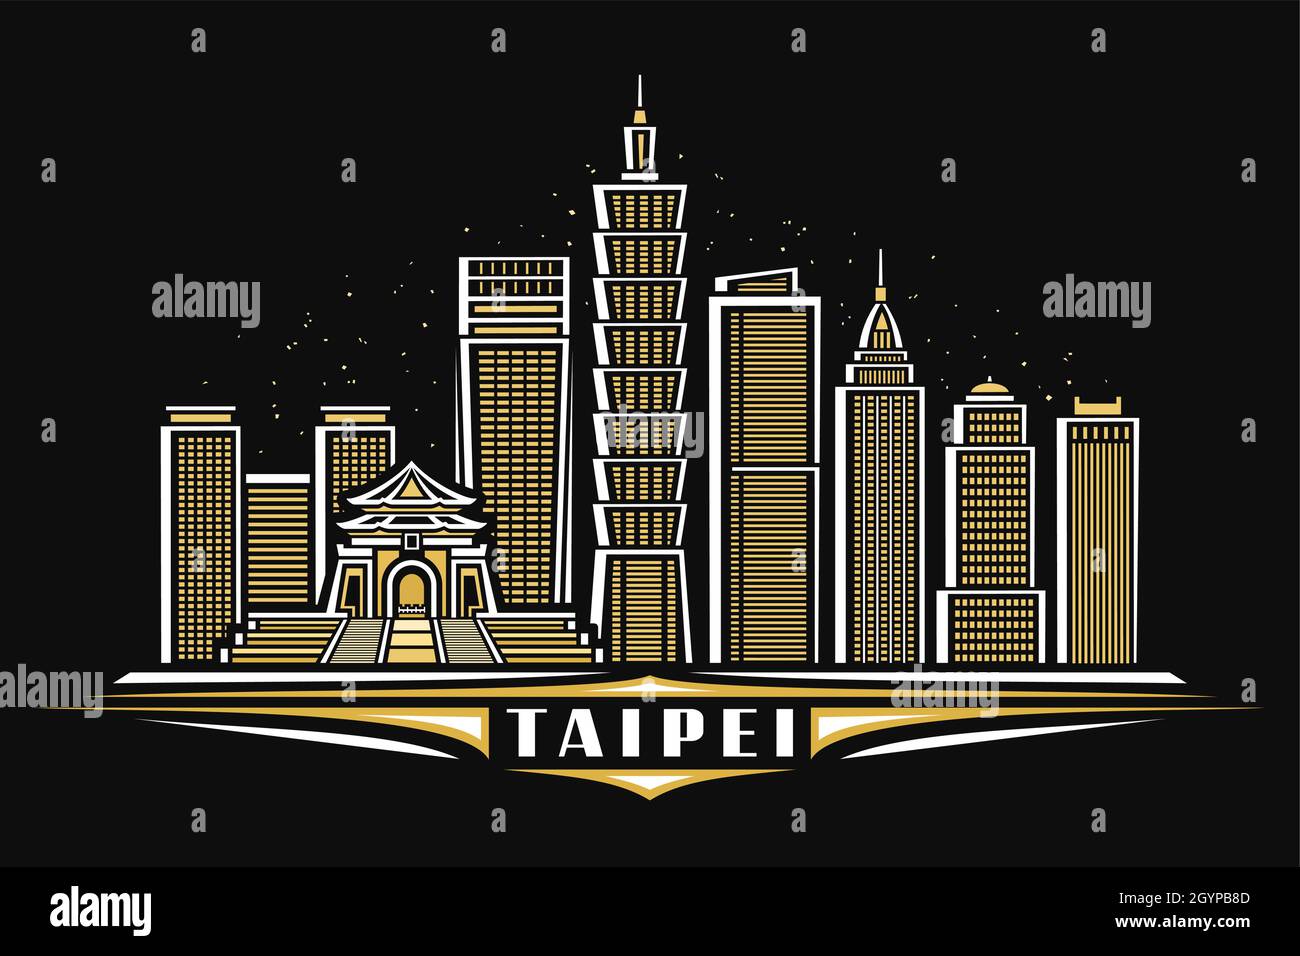 Vektor-Illustration von Taipei, horizontales Poster mit linearem Design beleuchtet taipei Stadtbild auf Dämmerung Himmel Hintergrund, asiatische städtische Linie Kunst Konzept Stock Vektor